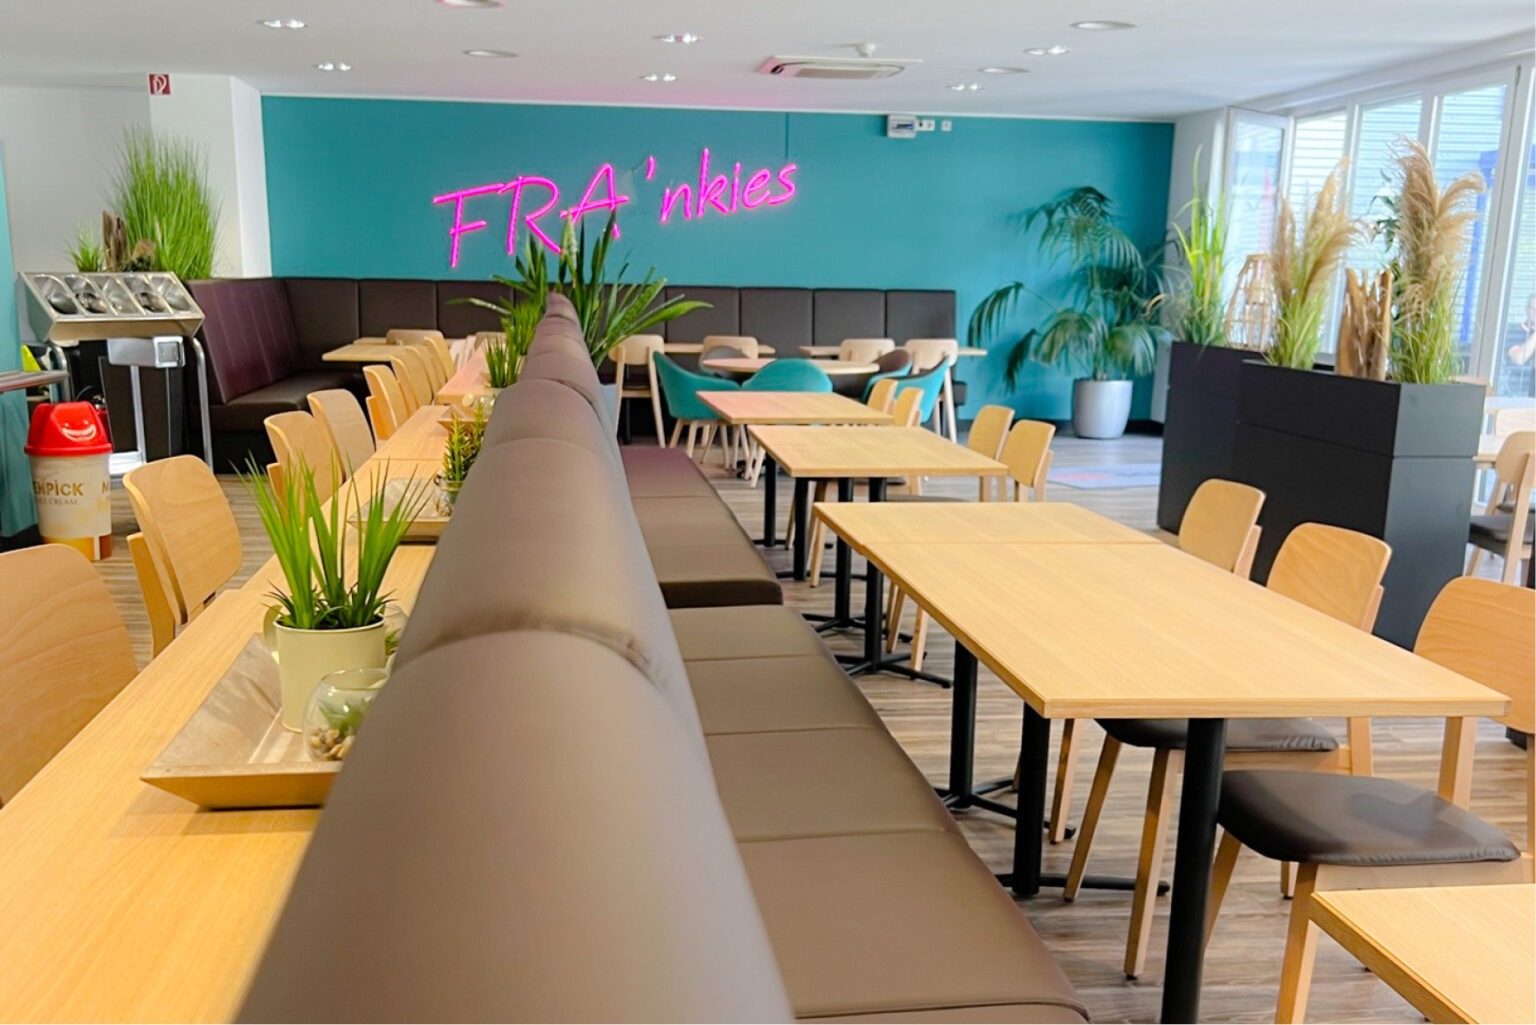 Kantinen Einrichtung Frankies Frankfurt Schniedersitzt Möbel für gute Gäste